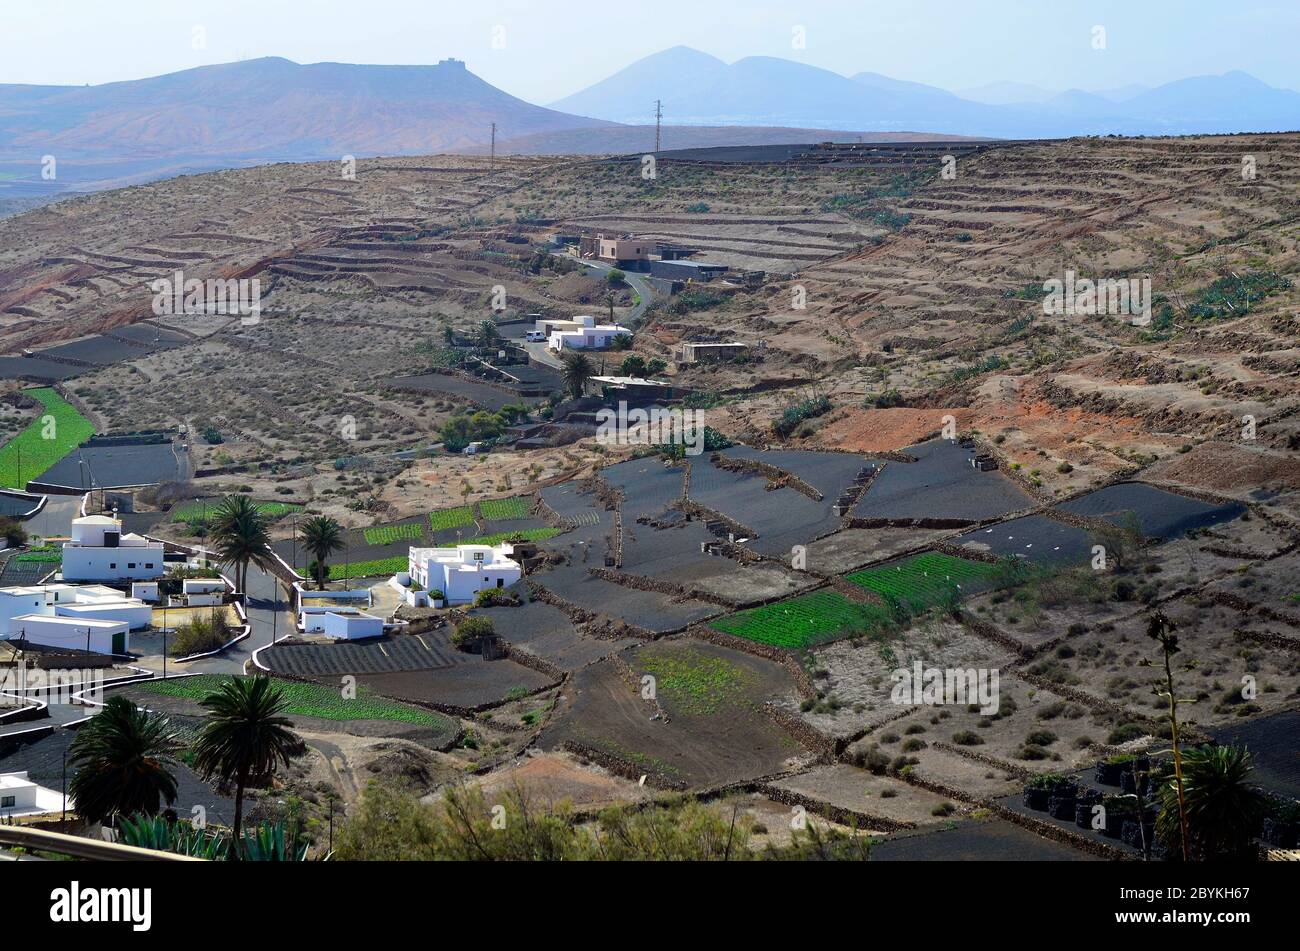 Spagna, Lanzarote, case in zona agricola con campi terrazzati a Los Valles, Isole Canarie, Foto Stock